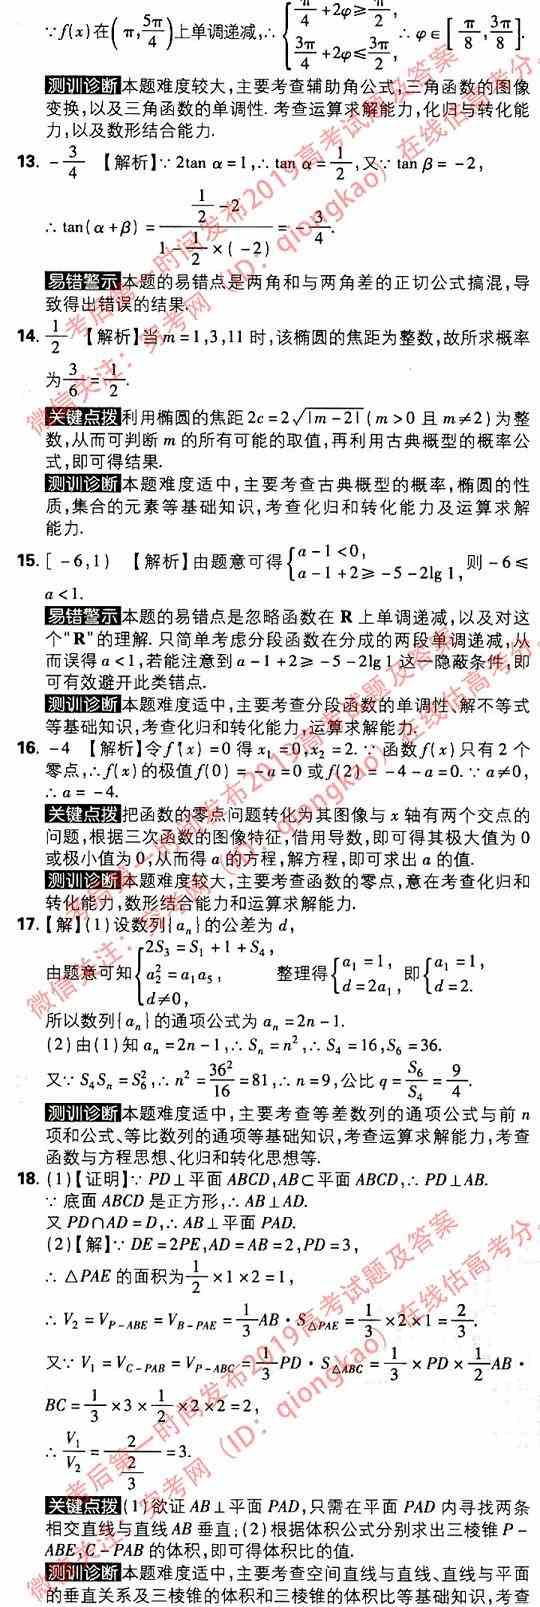 2019年高考上海数学试题及答案解析【考后公布】